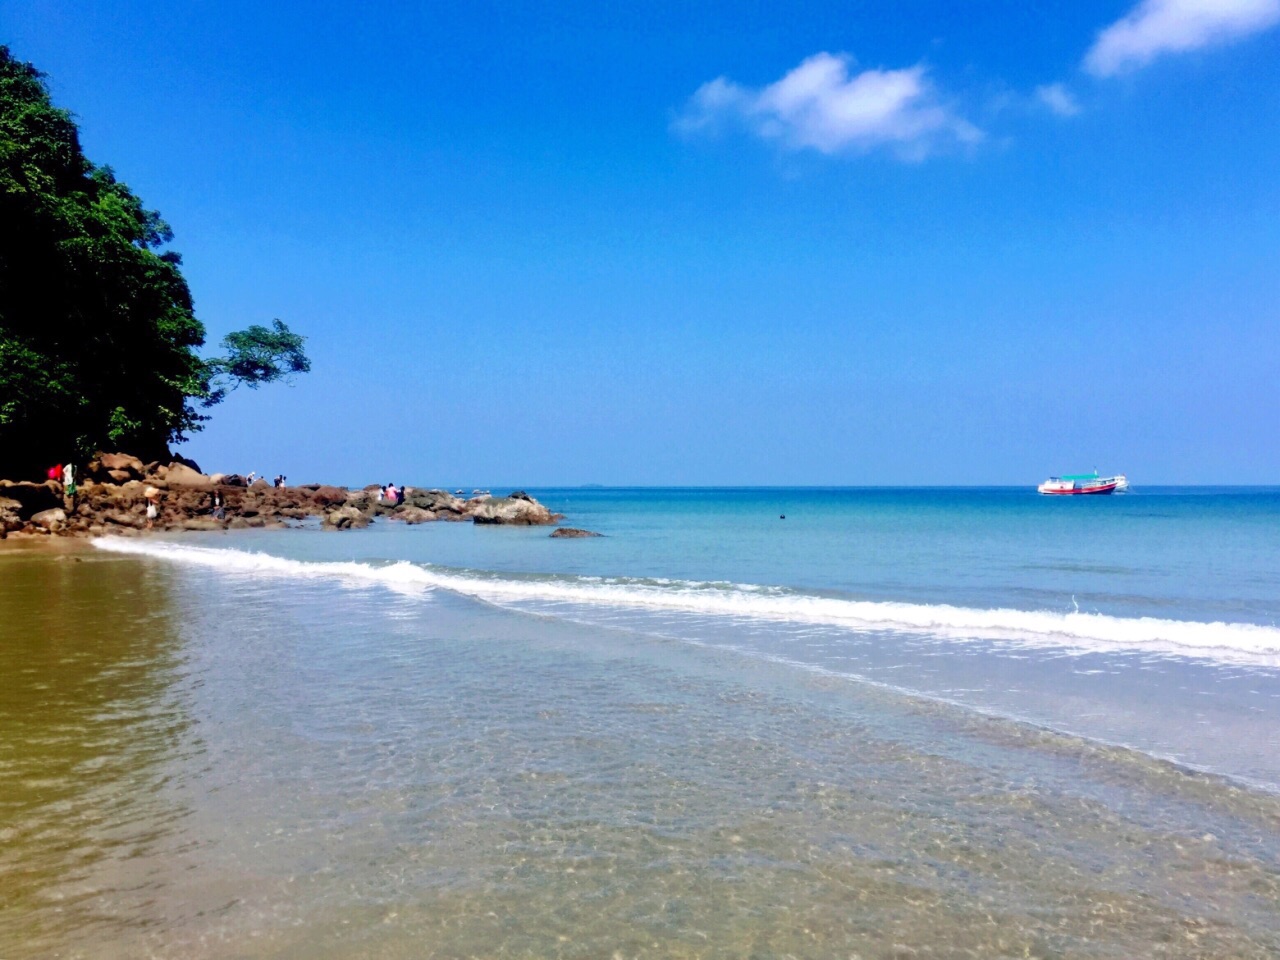 缅甸除了大金塔以外，西南边还有，绵延十数公里长的维桑海滩。那里海水清澈，湛蓝犹如蓝宝石般。小岛还有个